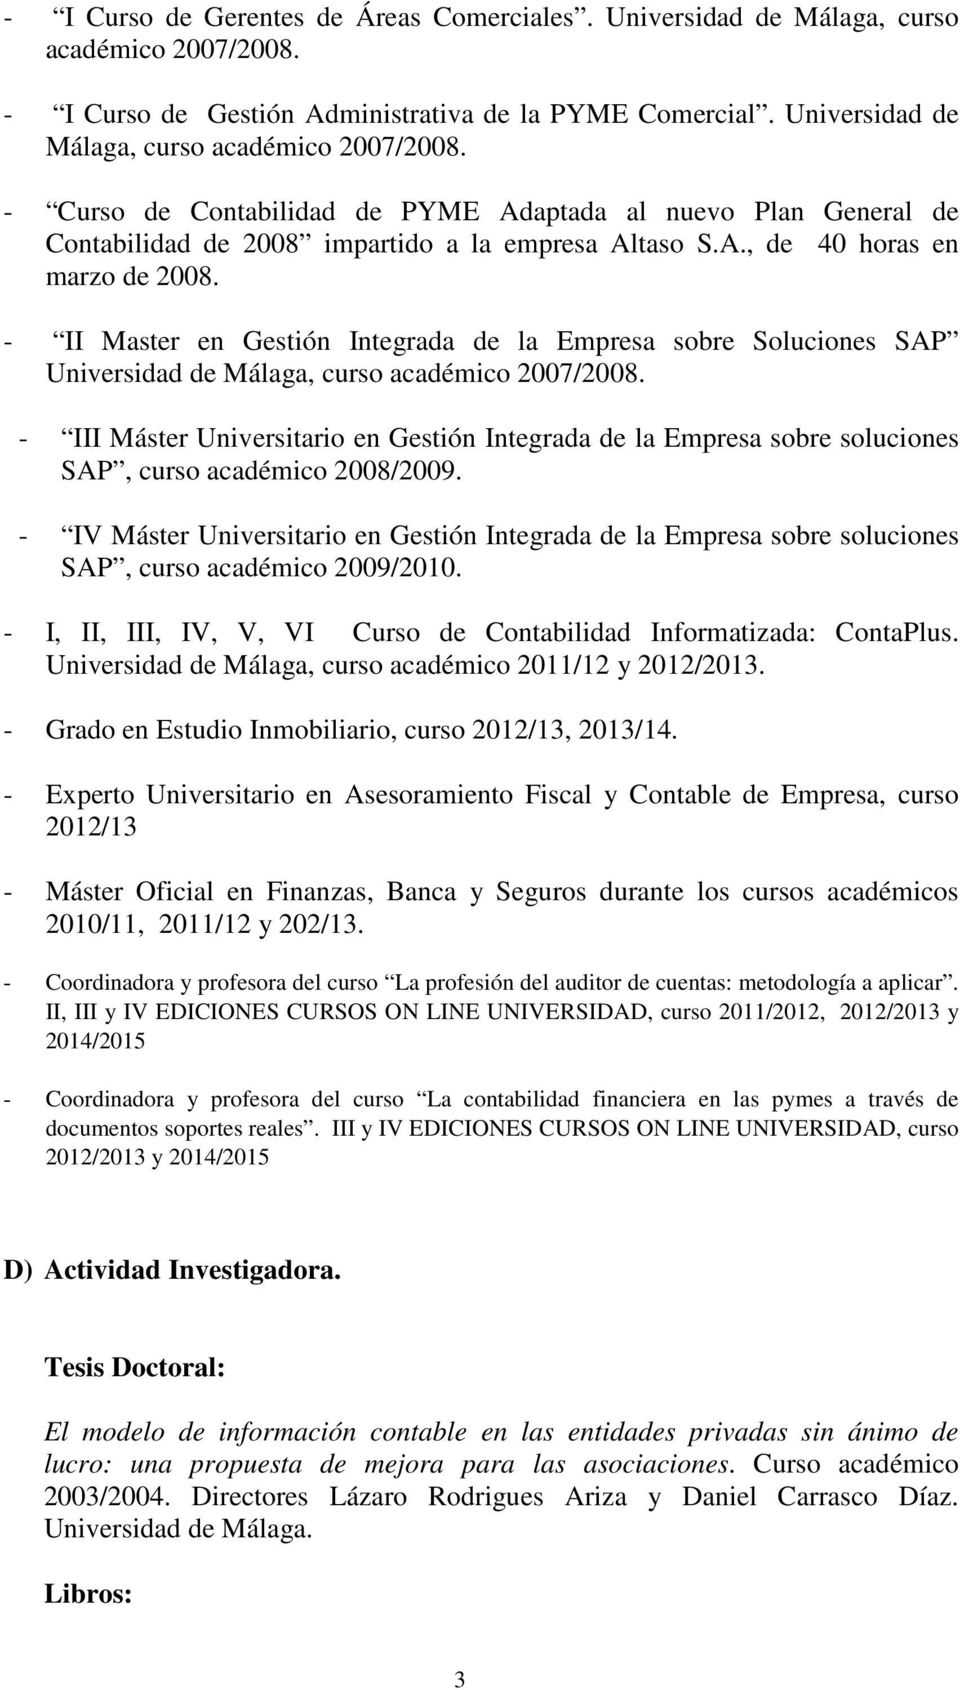 - II Master en Gestión Integrada de la Empresa sobre Soluciones SAP Universidad de Málaga, curso académico 2007/2008.